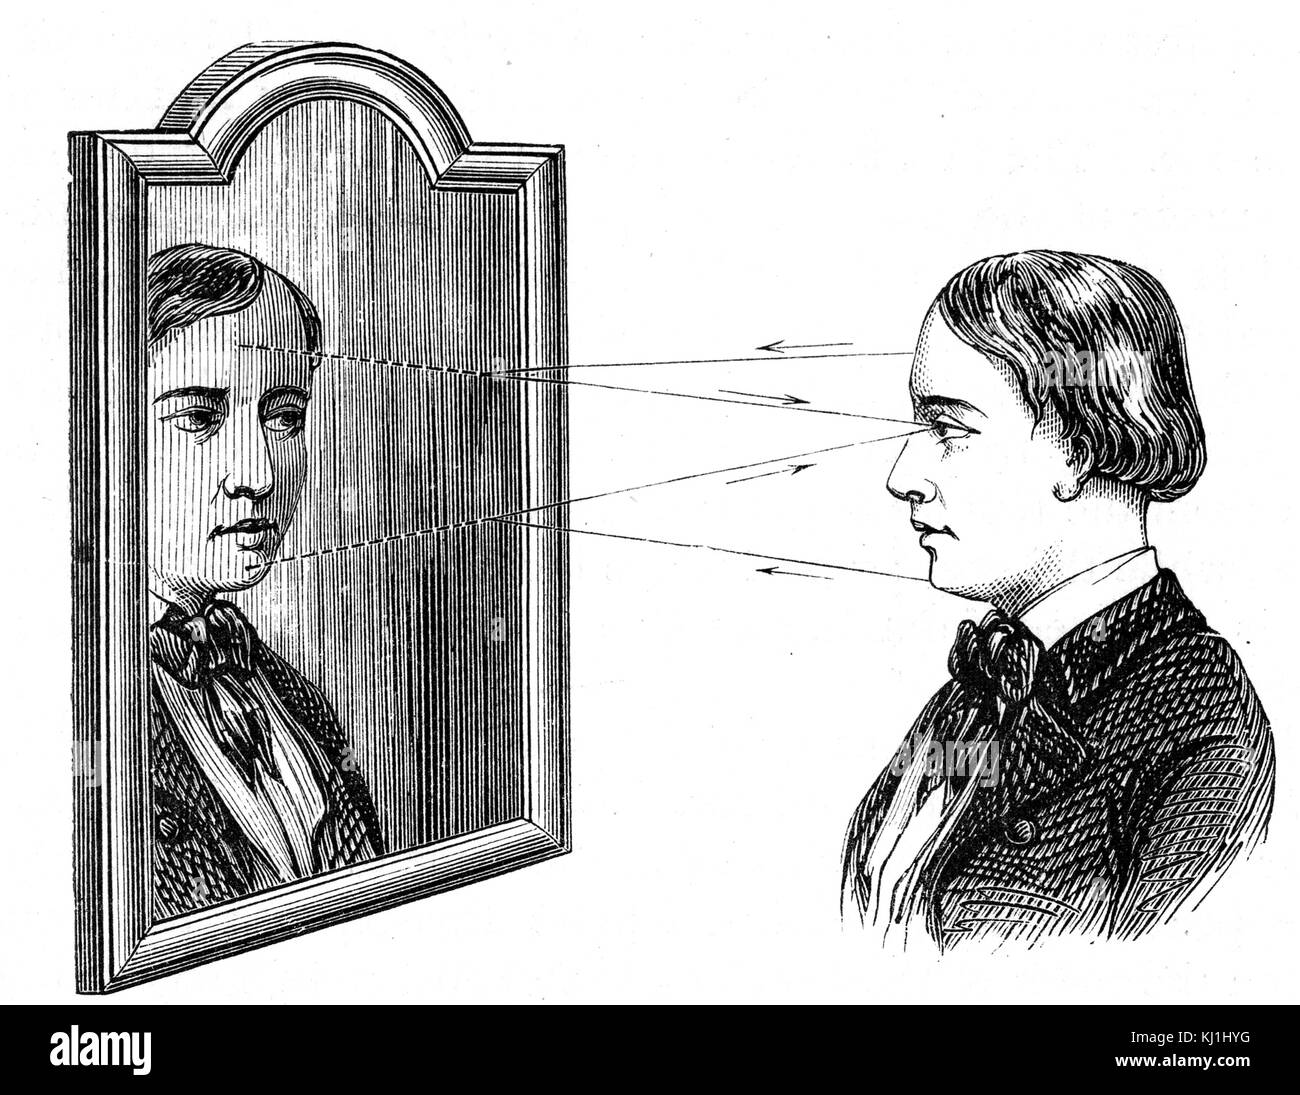 Gravure illustrant la réflexion d'un objet dans un miroir plan, montrant comment l'angle d'incidence est égal à l'angle de réflexion. En date du 19e siècle Banque D'Images